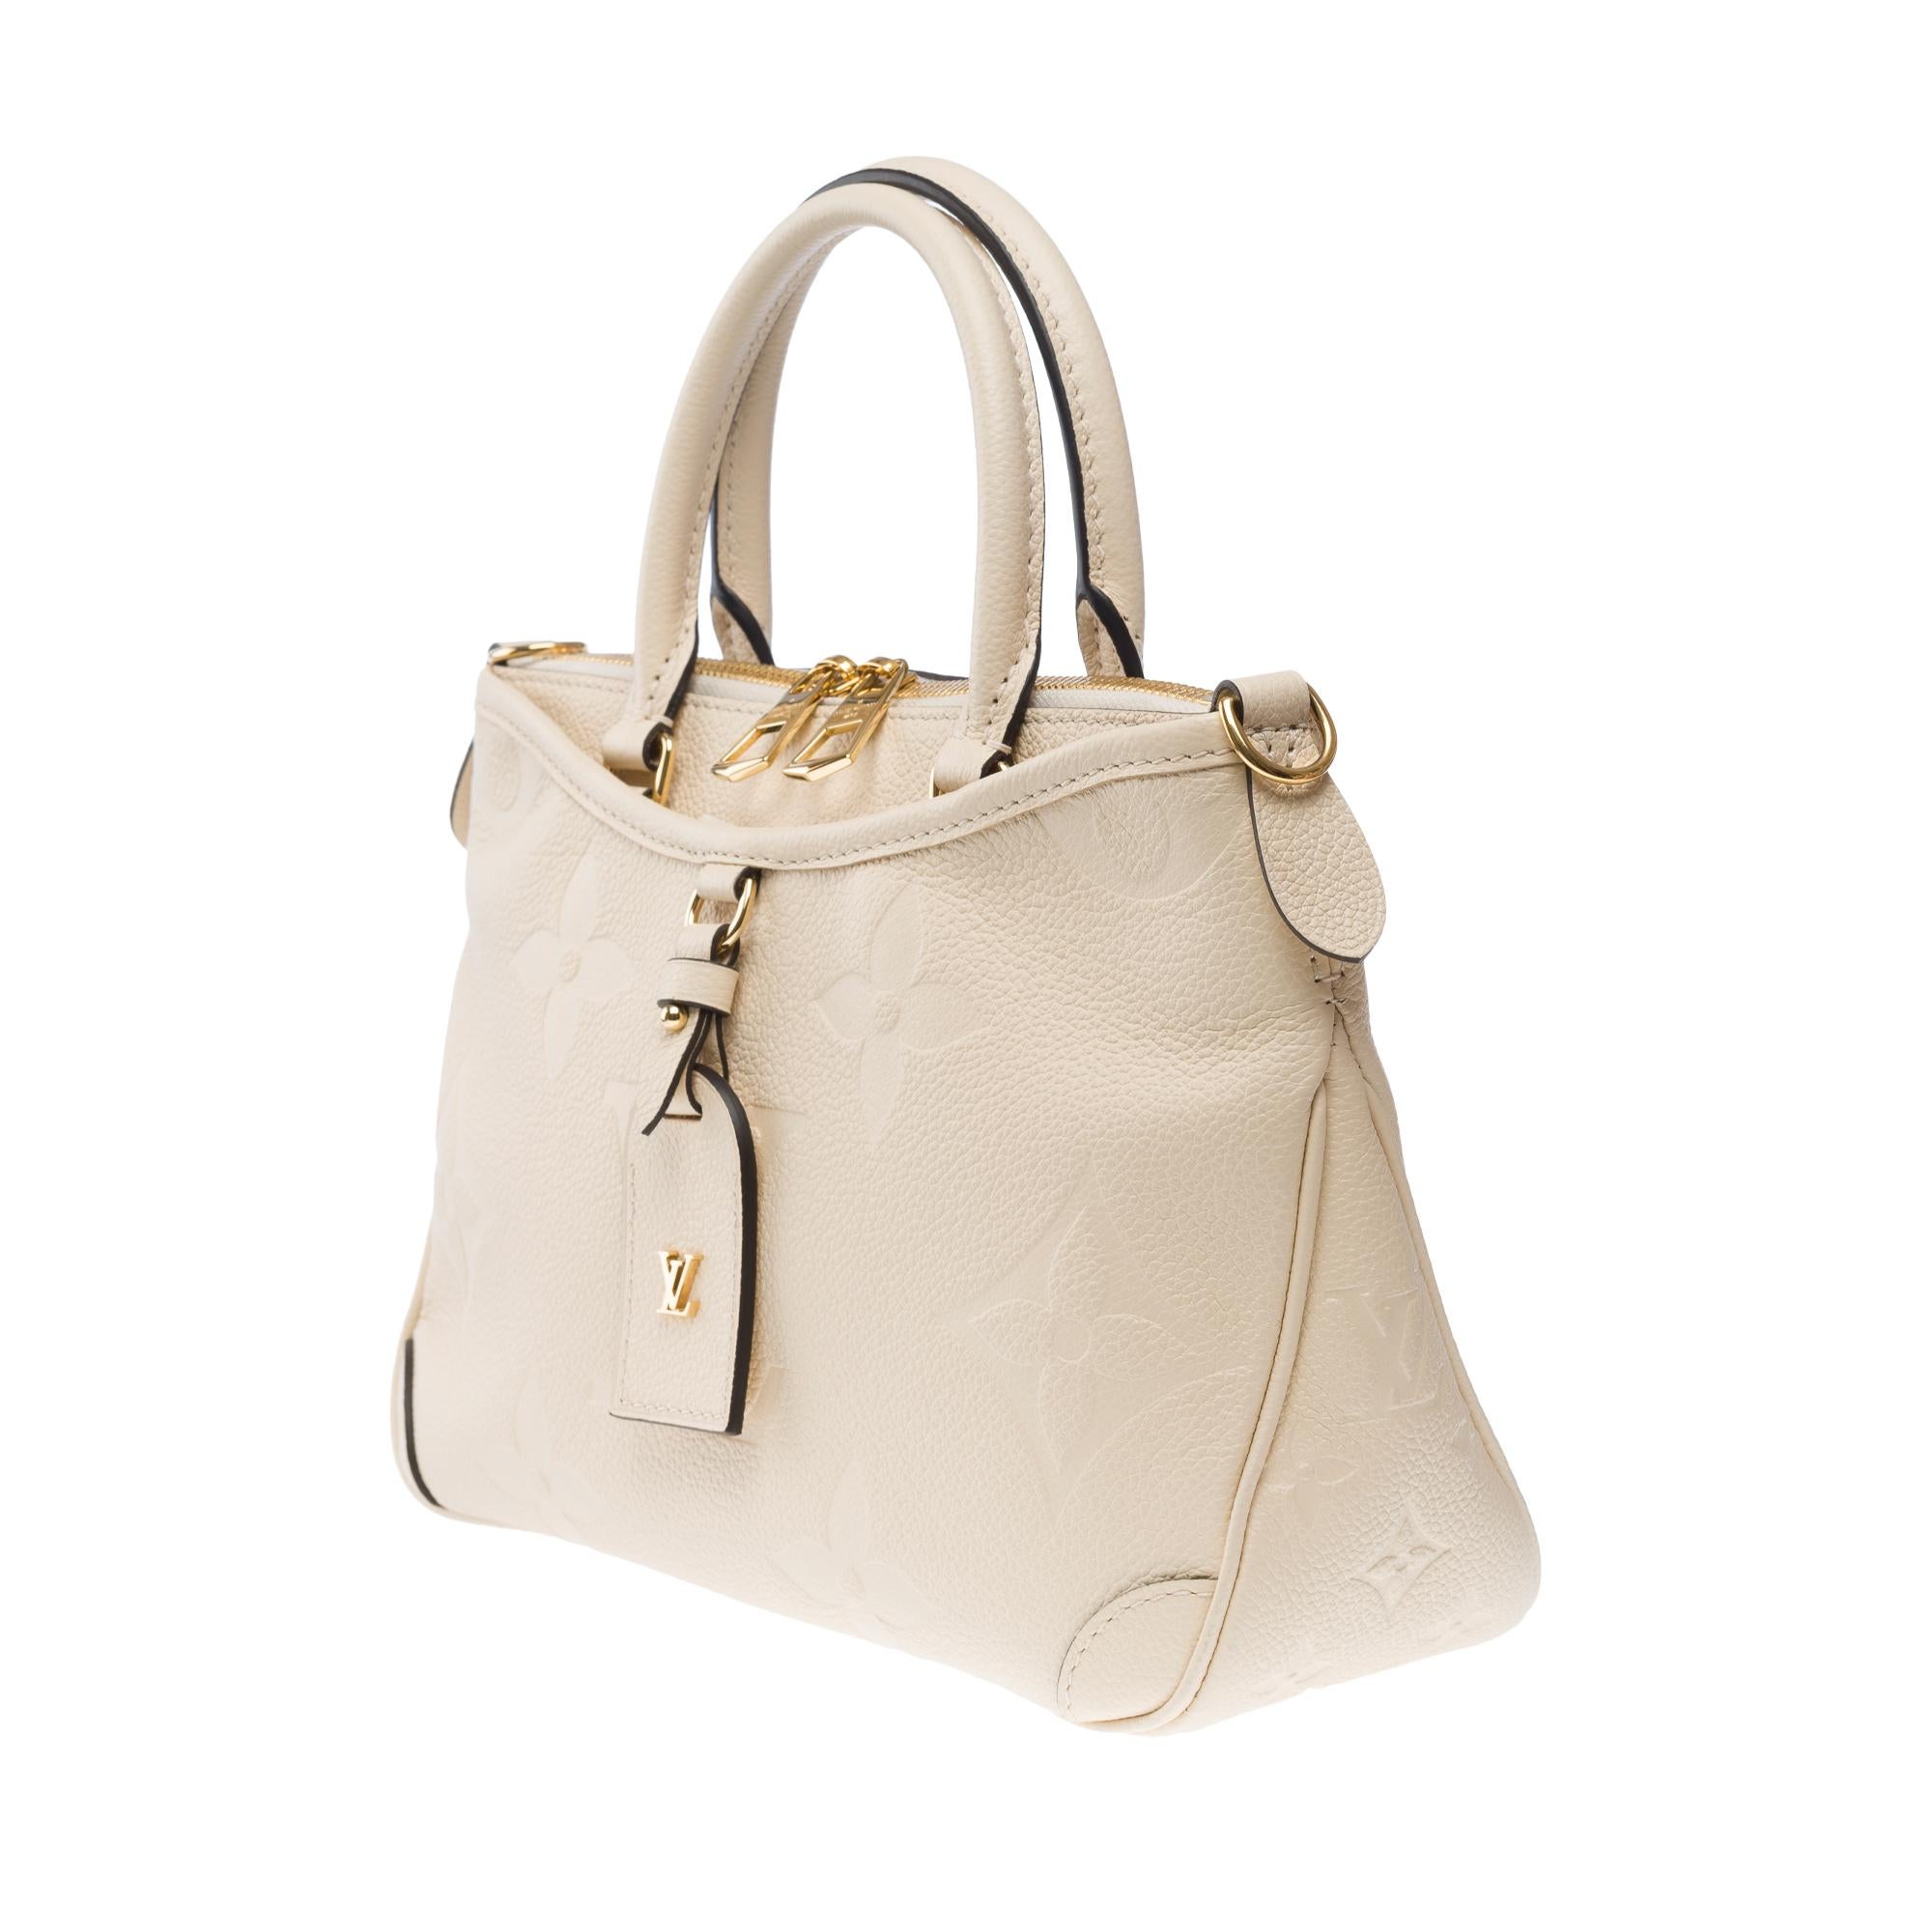 Louis Vuitton Trianon PM handbag strap in Cream White monogram calf leather, GHW For Sale 1